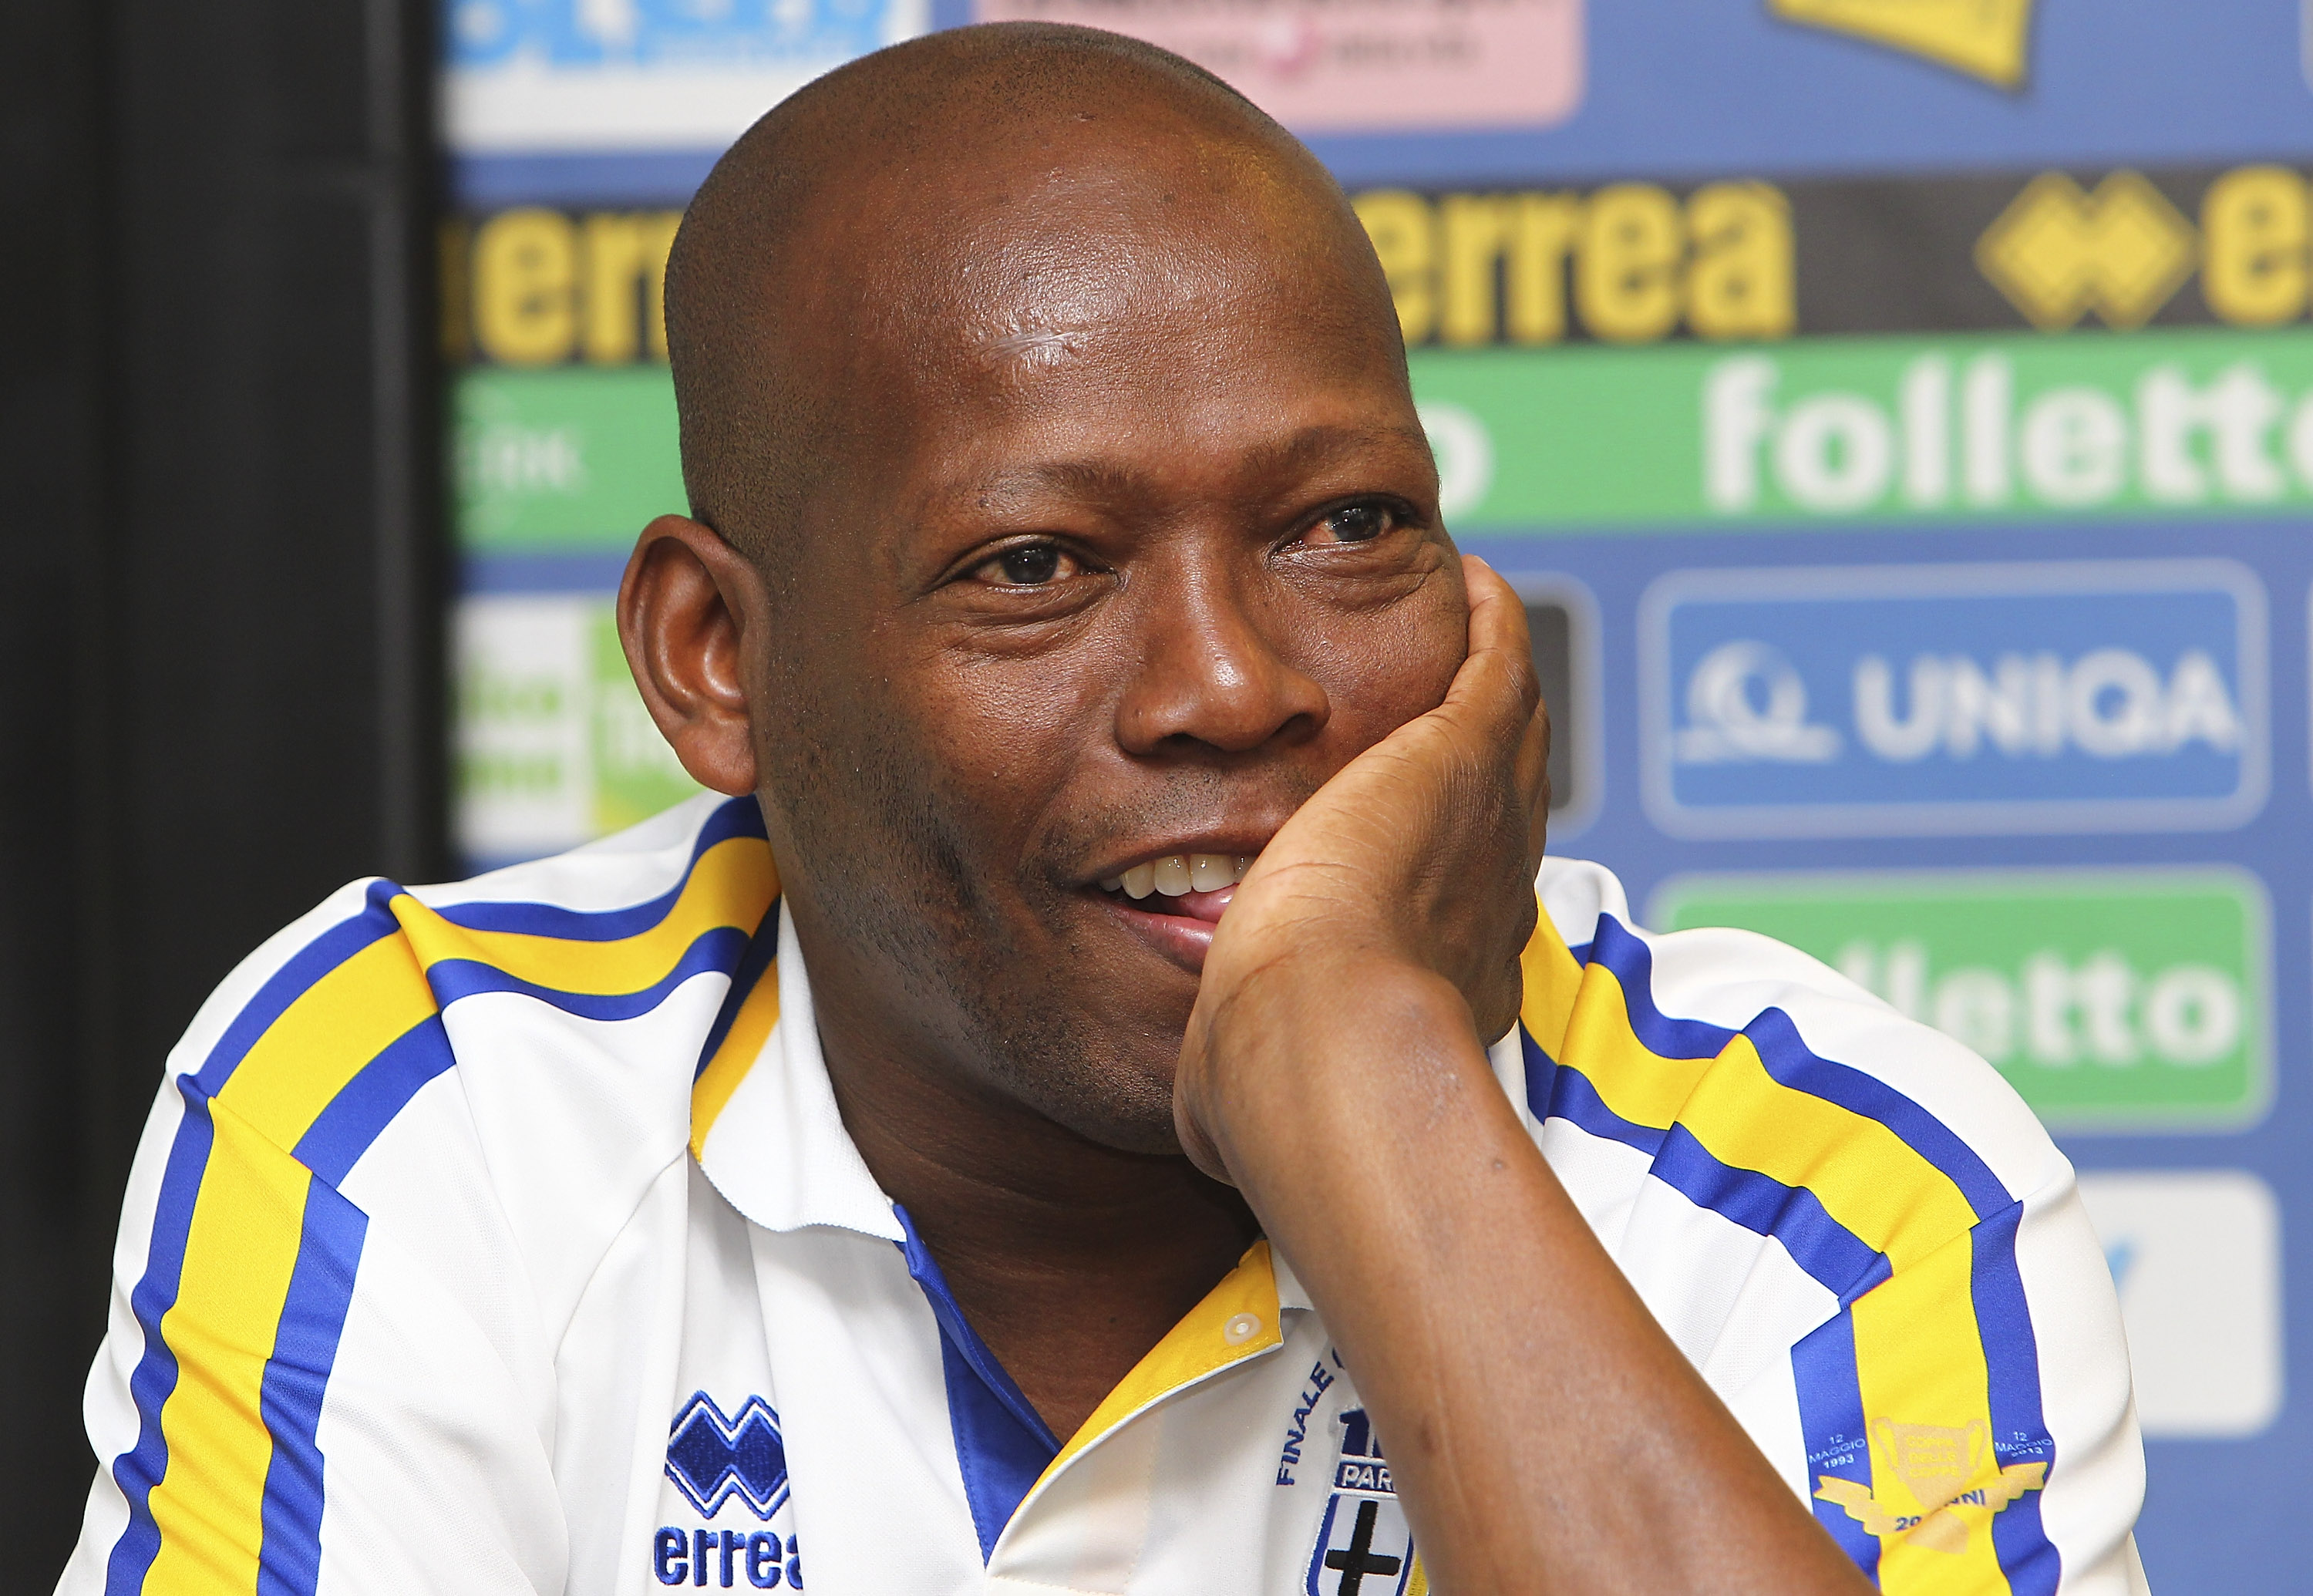 Asprilla allenatore Colombia